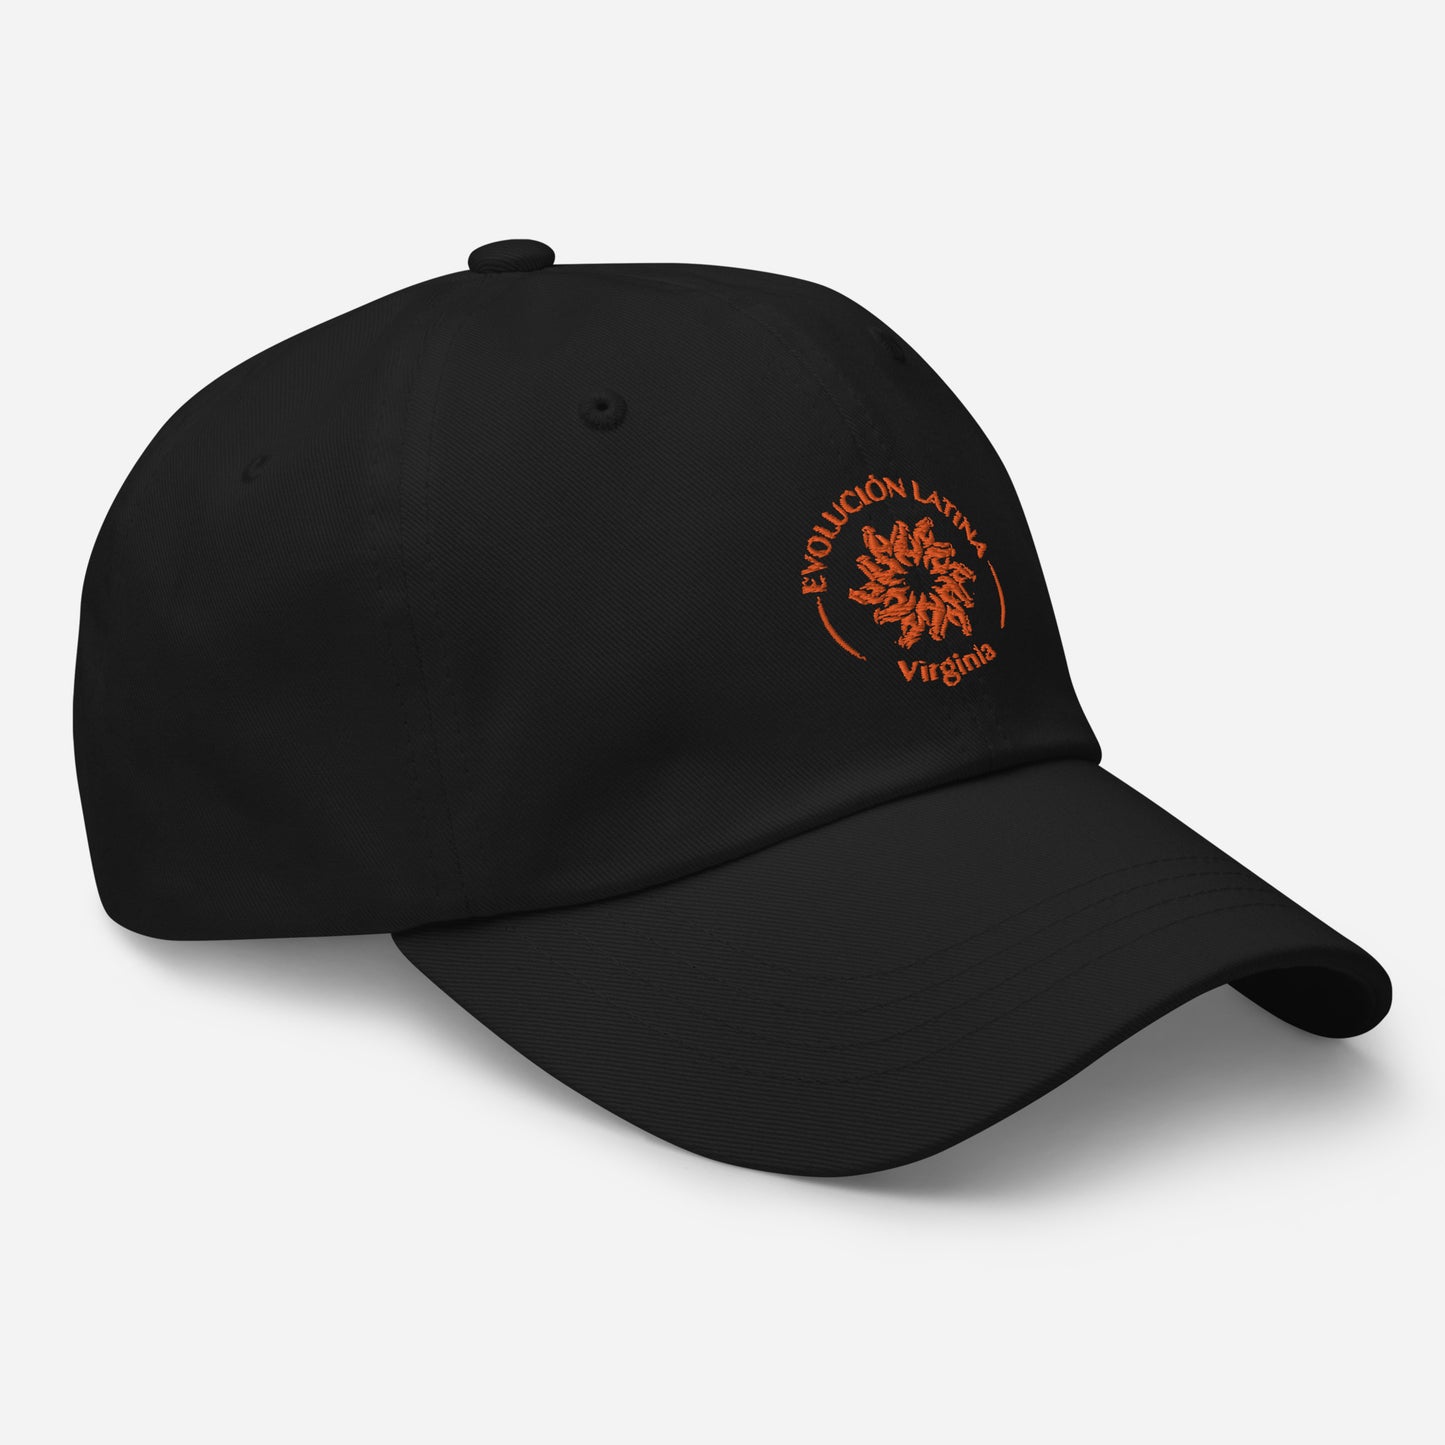 ELDC Virginia Cap Hat